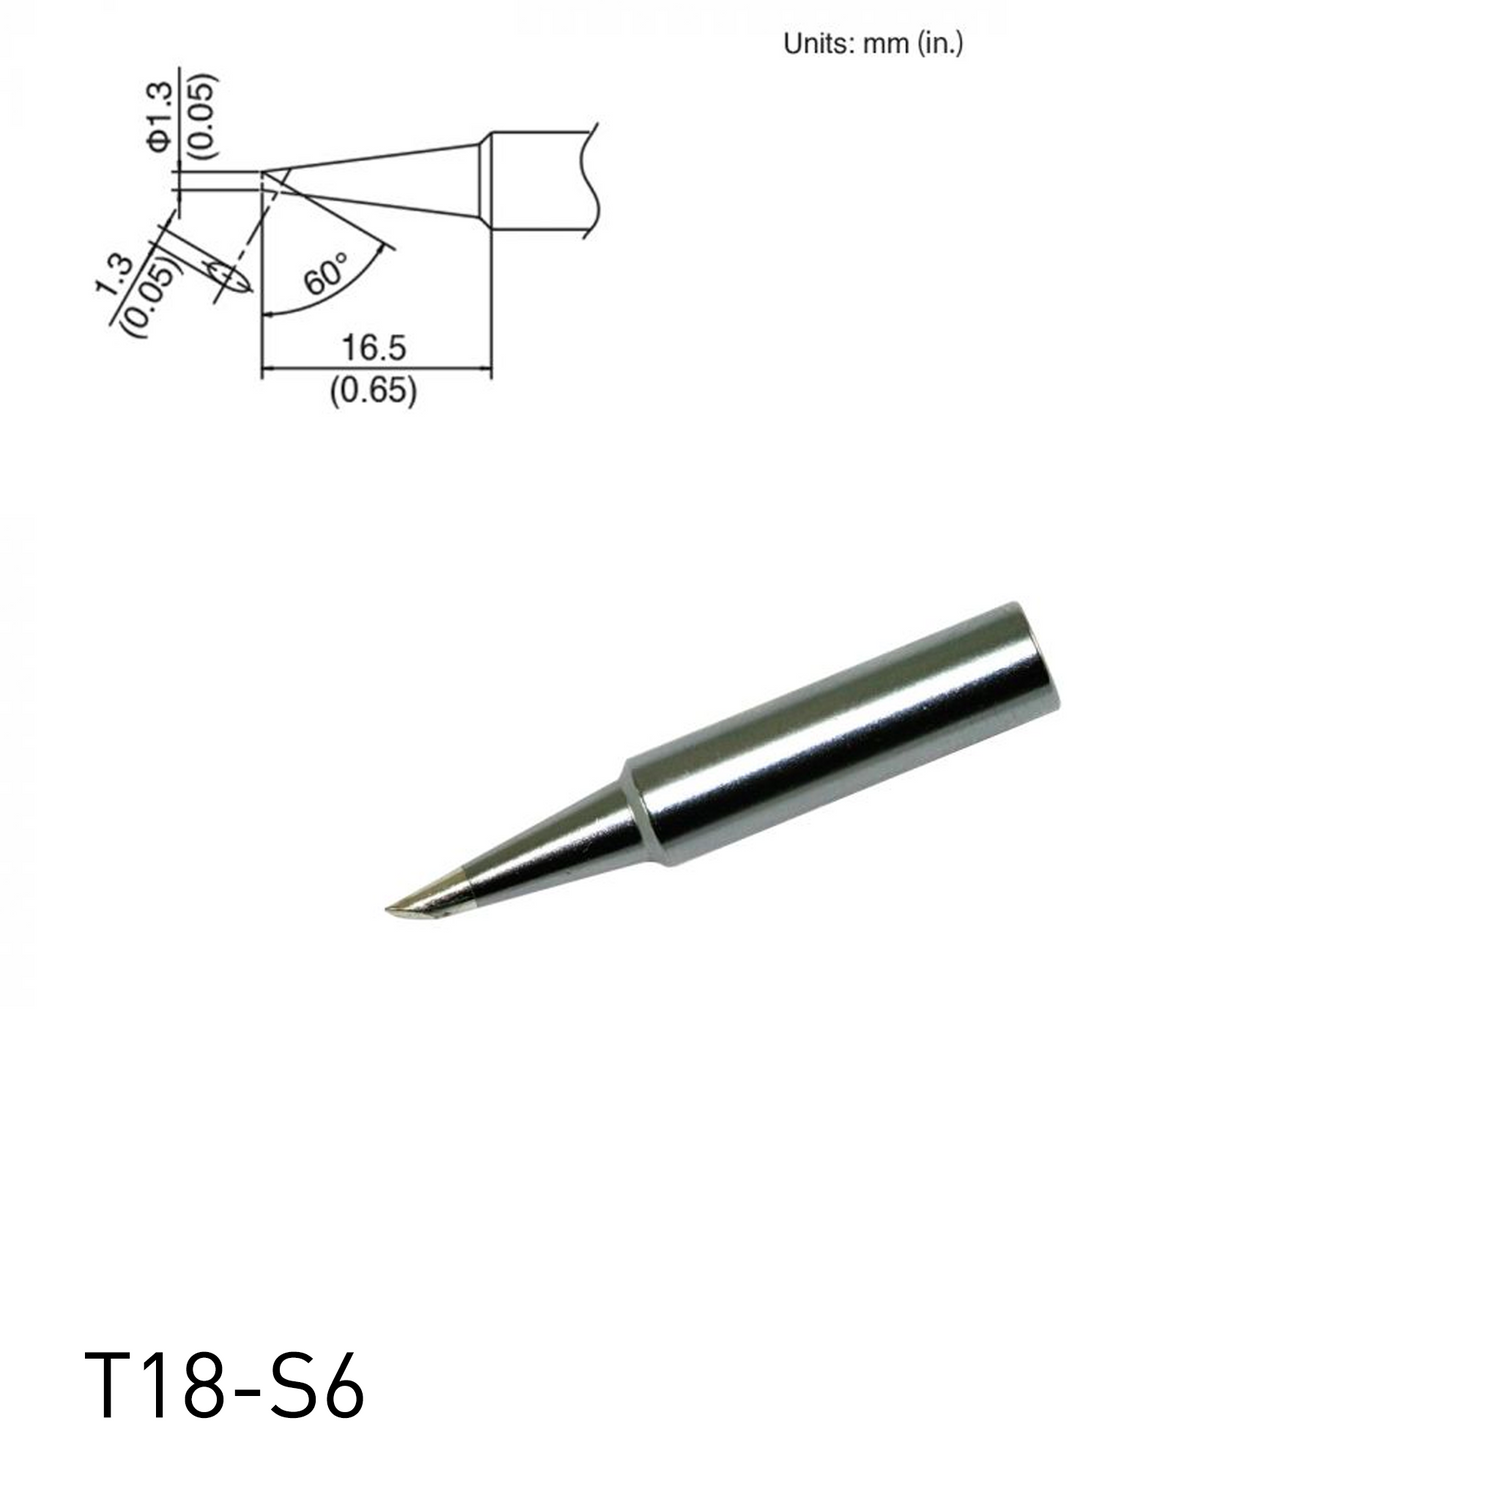 Hakko soldering iron tip T18-S6 Bevel Tip for soldering station FX888, FX888D, FX889, FR701, FR702, FX600 & soldering iron FX8801, FX600